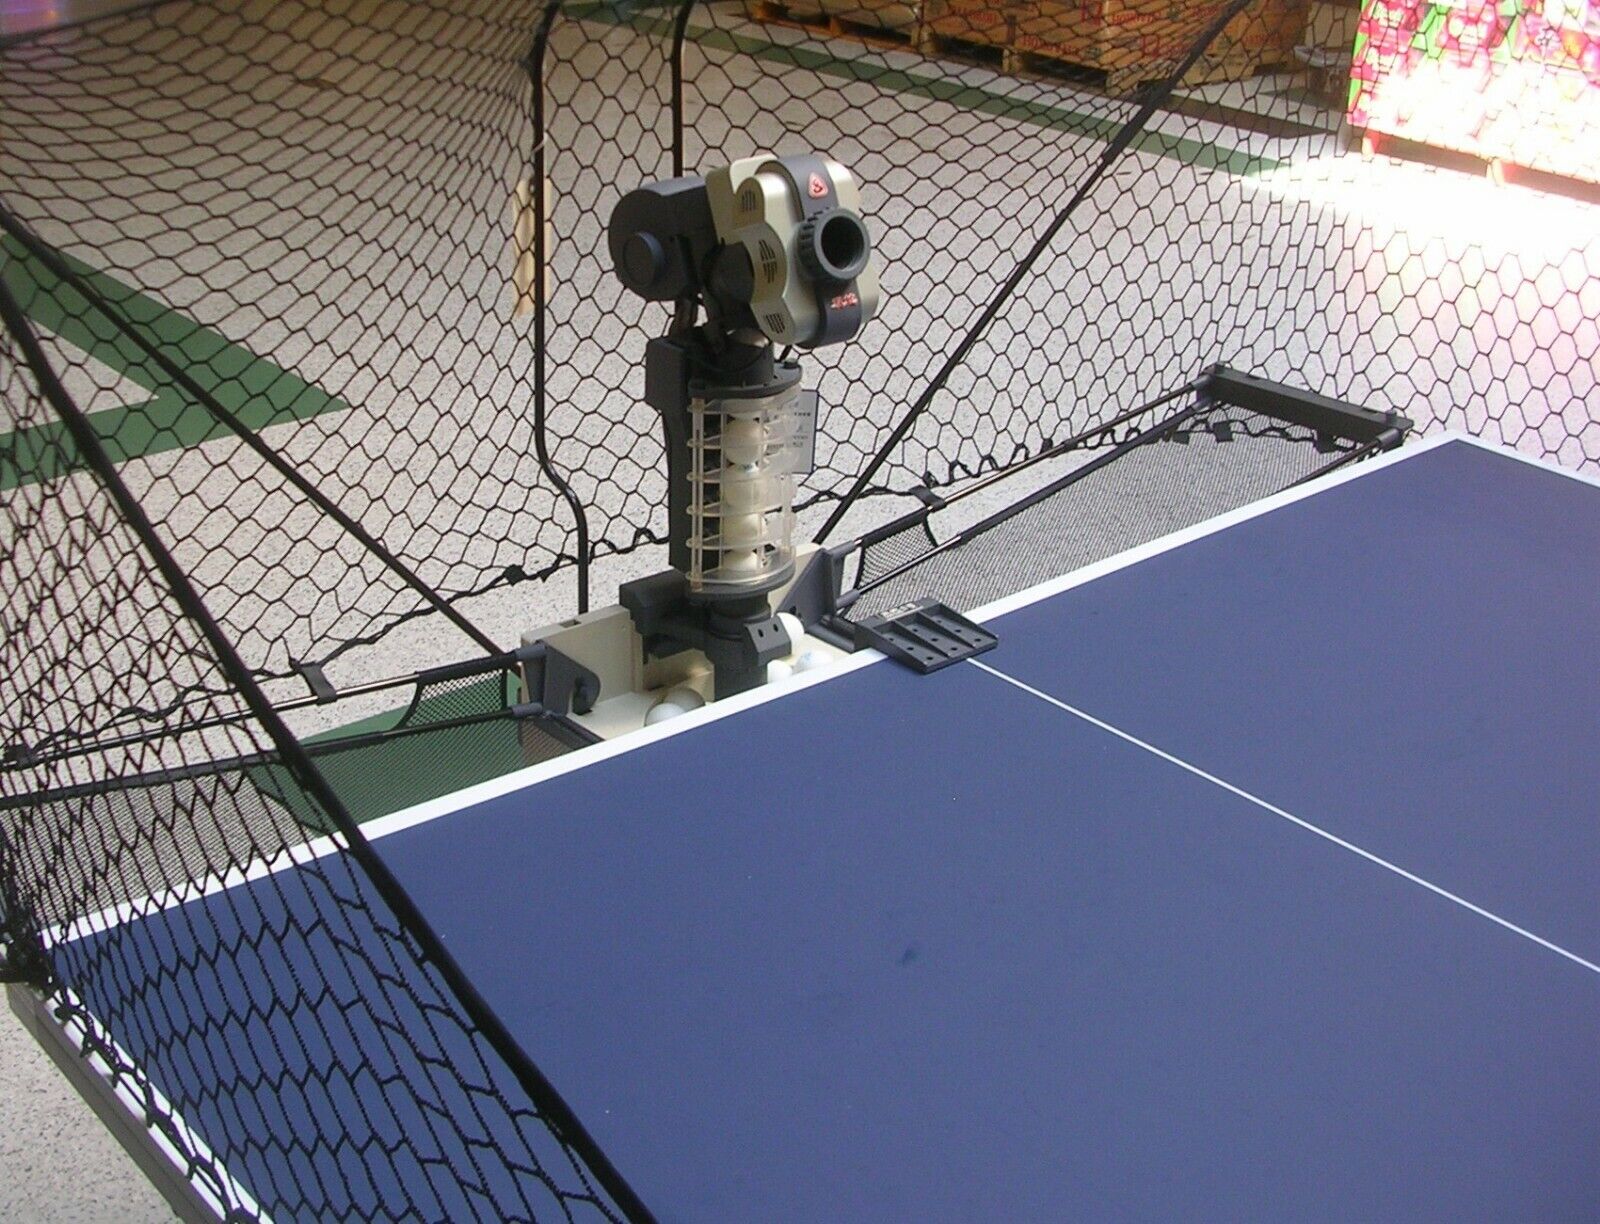 Tennis Robot Ball Machine Double Snake Top Fqj-4